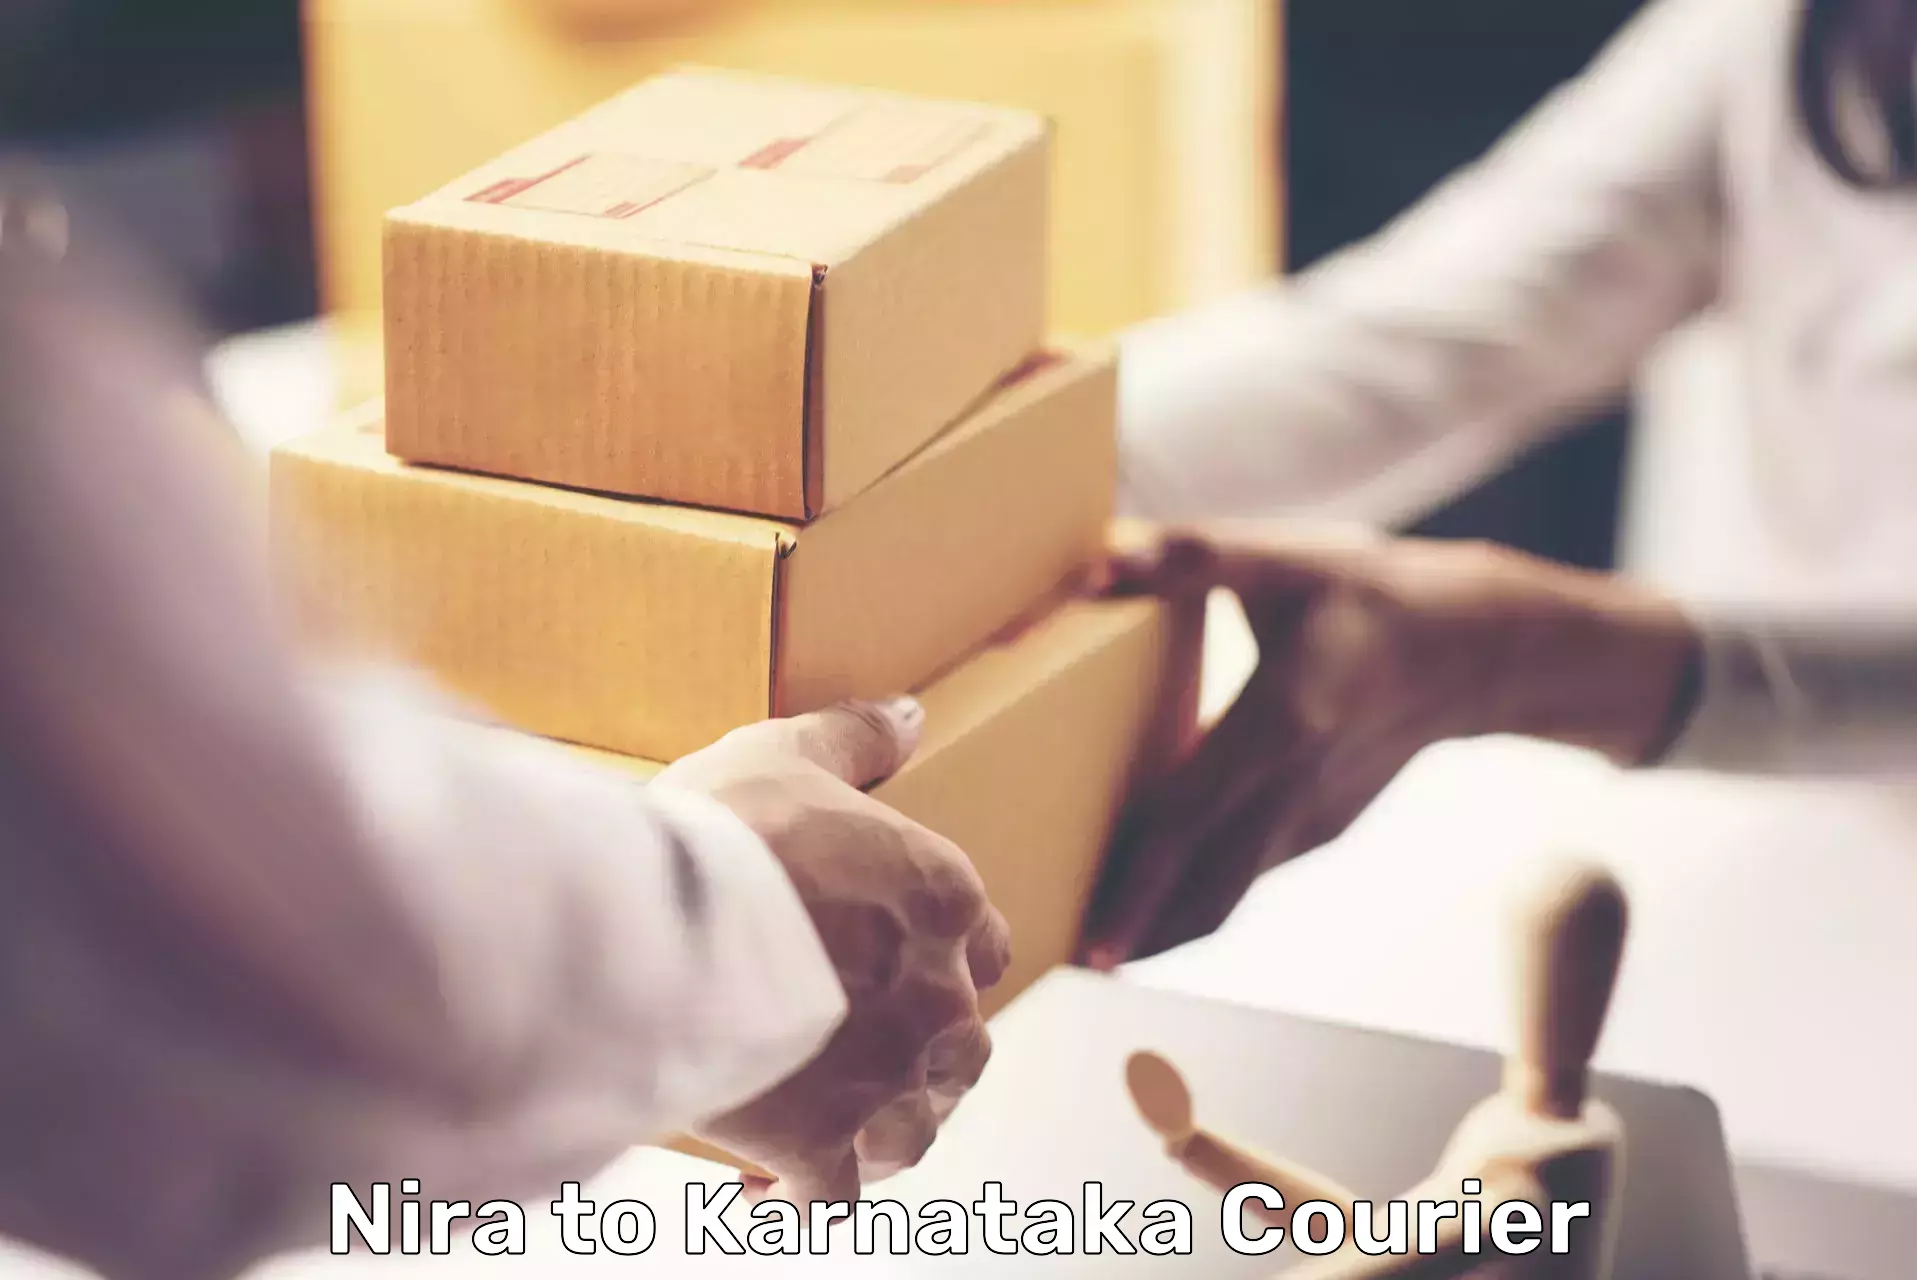 Courier service comparison in Nira to Heggadadevankote HD Kote